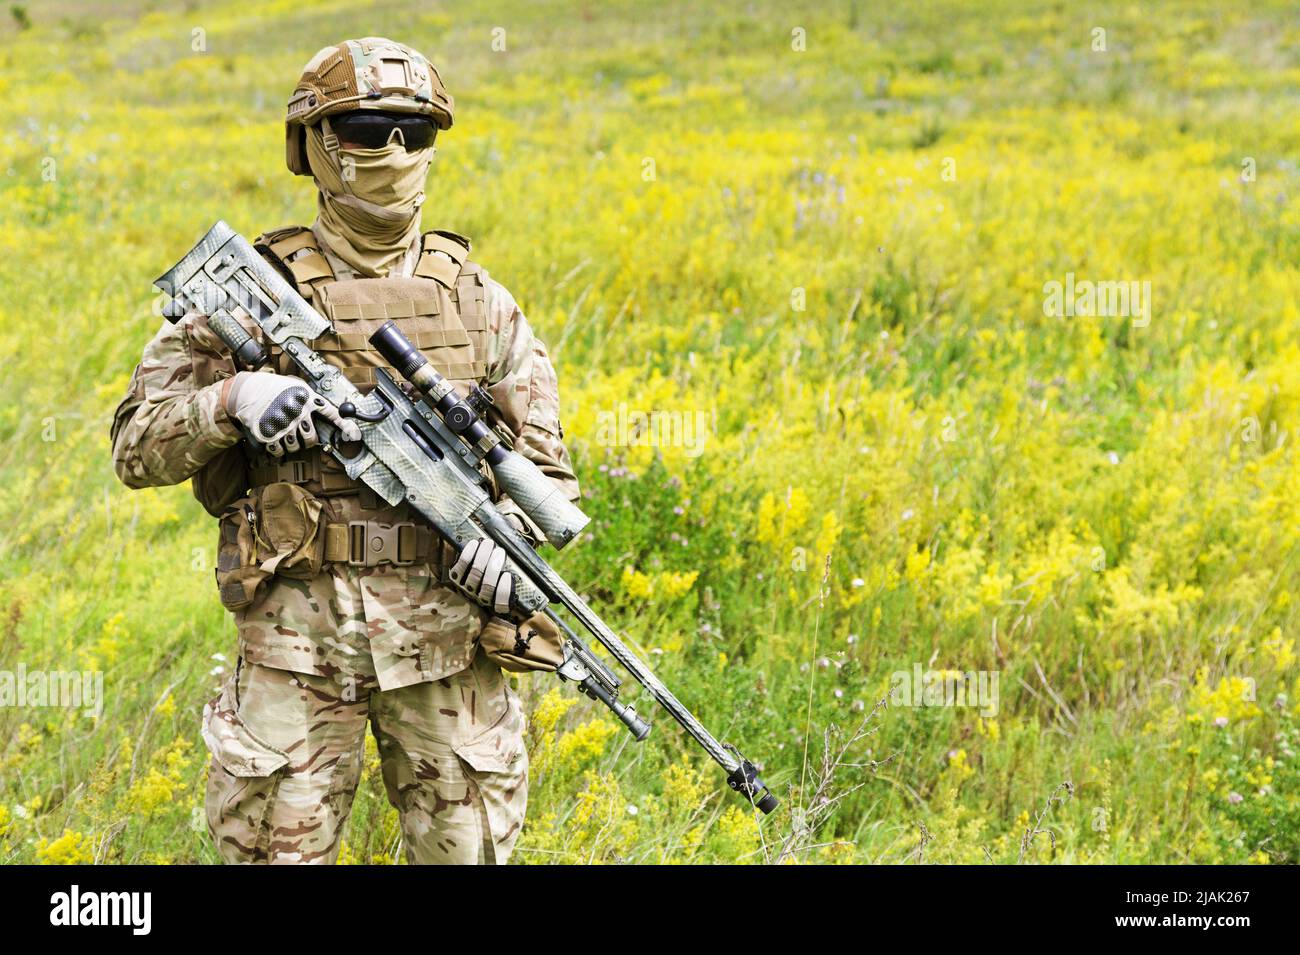 Soldat armé debout dans un champ de fleurs. Banque D'Images